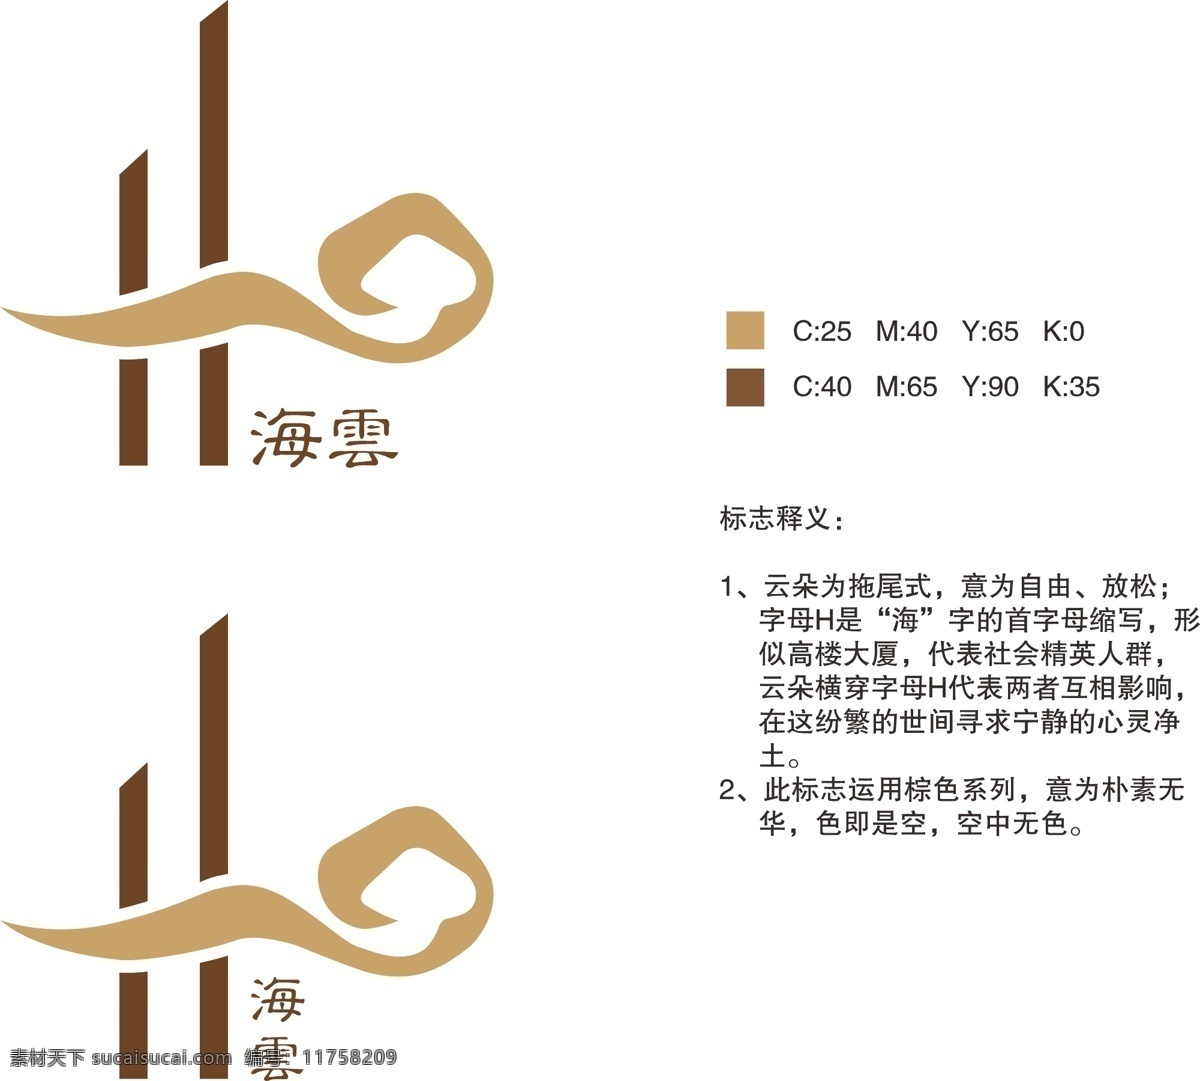 海云logo 海云 logo 云 大厦 海 瑜伽 禅修 棕色 抽象 标志